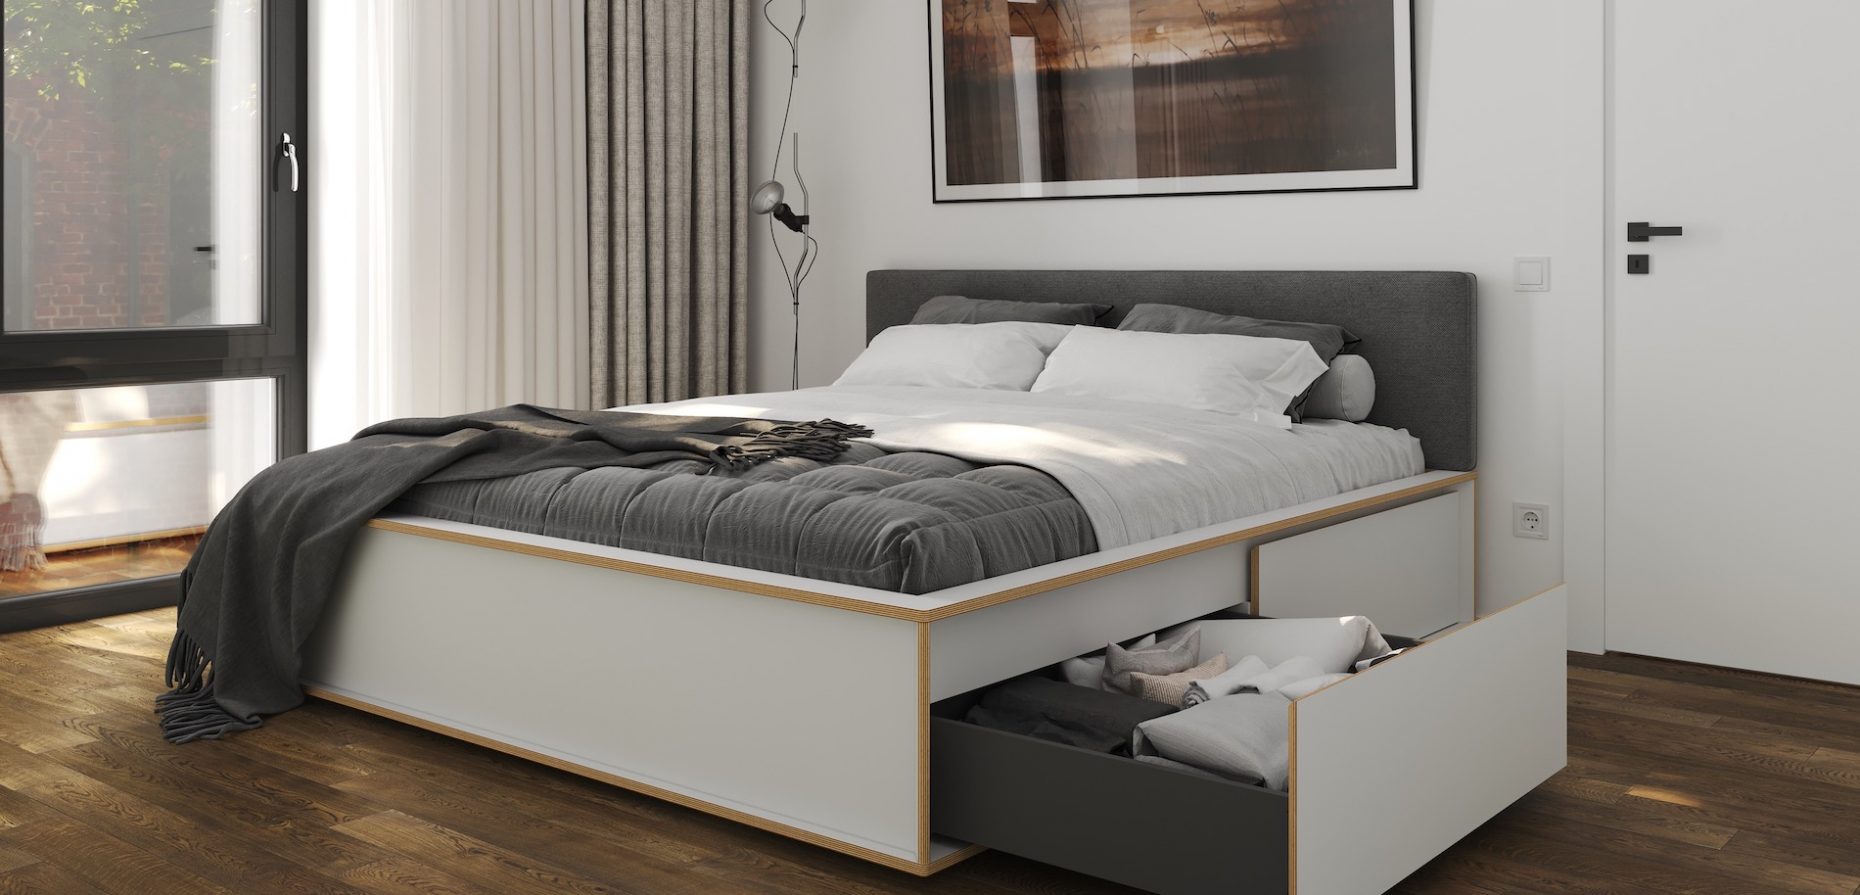 Mit SPAZE hat Müller Small Living jetzt ein Bett im Programm, das ansprechende Optik, hohen Liegekomfort und maximalem Stauraum verbindet. Entstanden ist es in Kooperation mit dem Designbüro kaschkasch.